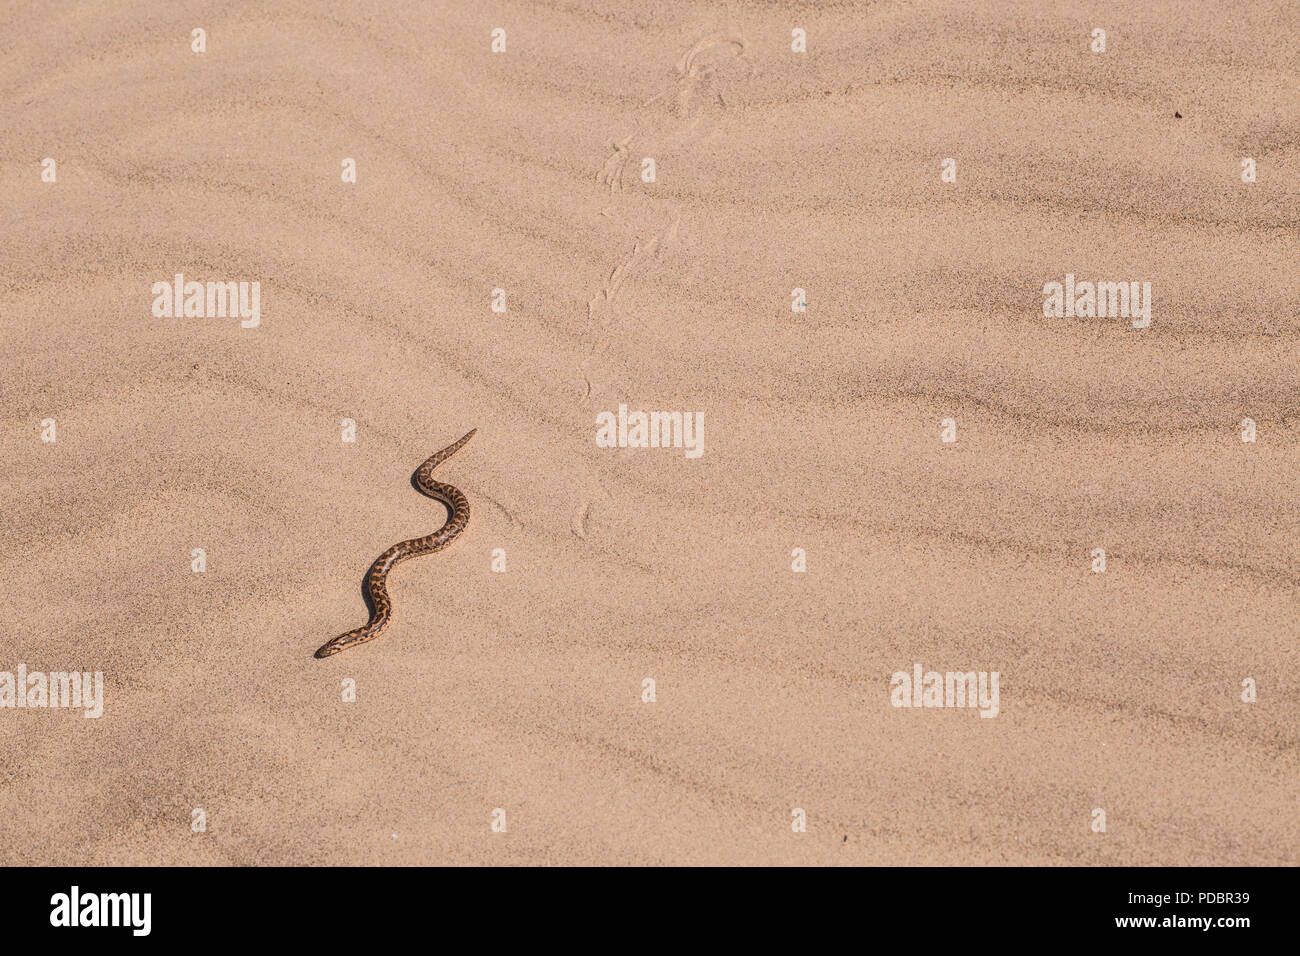 Giavellotto sabbia boa (Eryx jaculus) nella sabbia. Questo serpente si trova in Europa Orientale, il Caucaso e il Medio Oriente e Africa. Fotografato in Israele Foto Stock